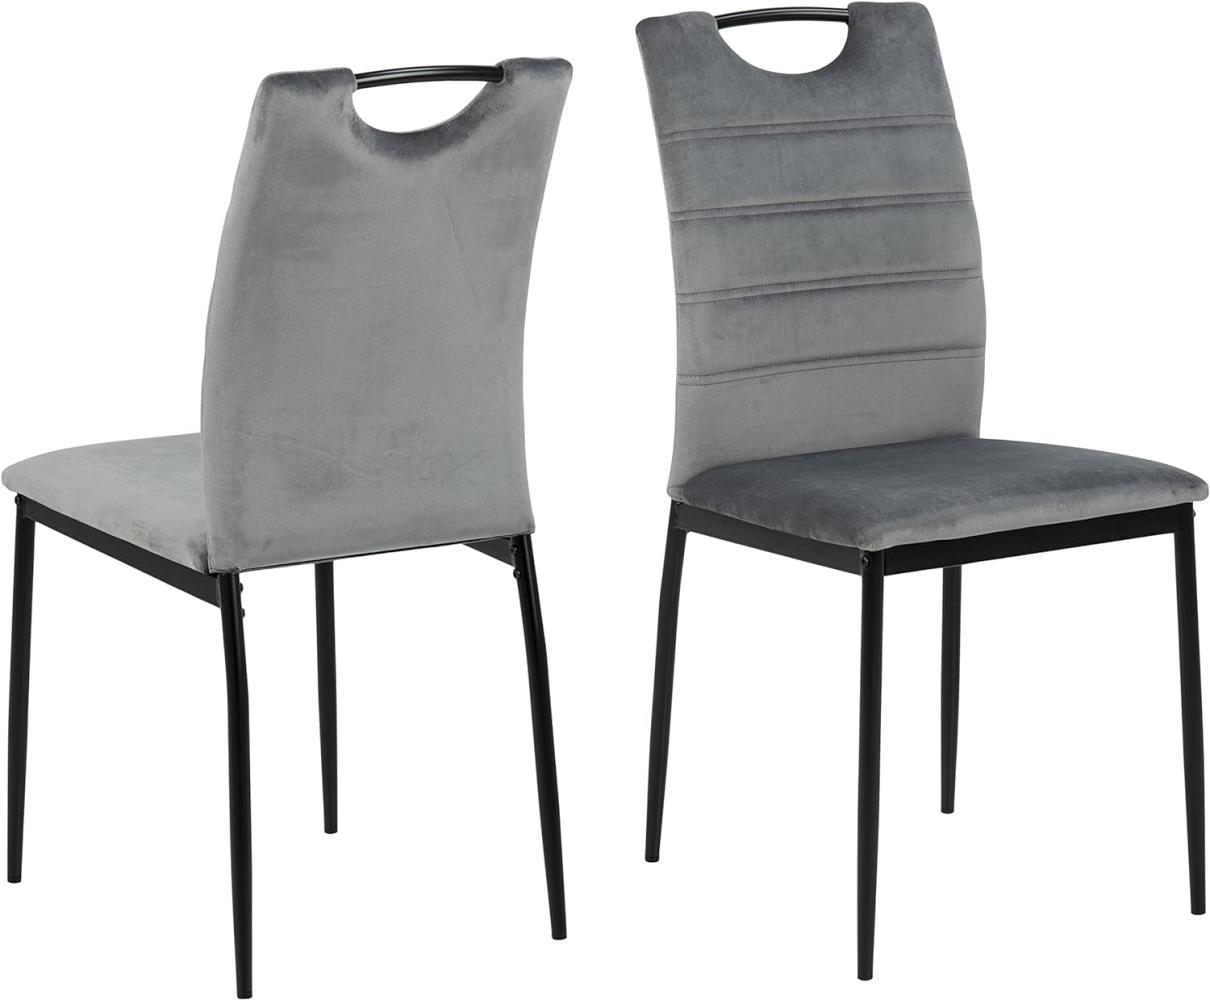 AC Design Furniture Drew Esszimmerstühle 4er Set, H: 91,5 x B: 43,5 x T: 53,5 cm, Dunkelgrau/Schwarz, Samt/Metall, 4 Stk. Bild 1